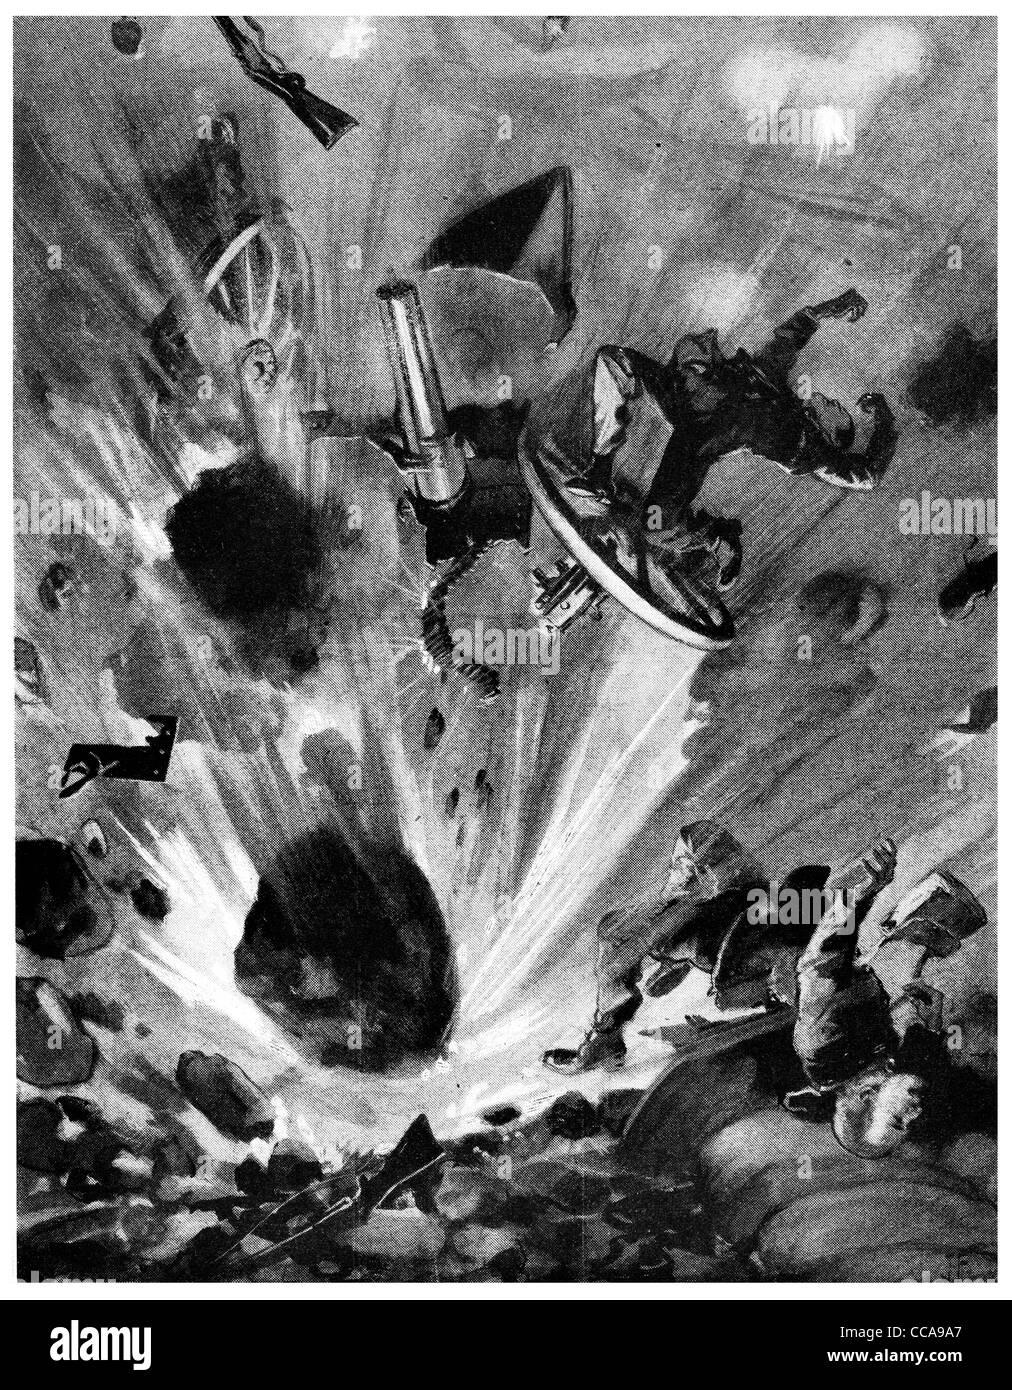 Français 1914 mine terrestre détruire canon allemand Gunner rocks terre explosion bombe éclatée destruction jetée battant homme hommes blast Banque D'Images